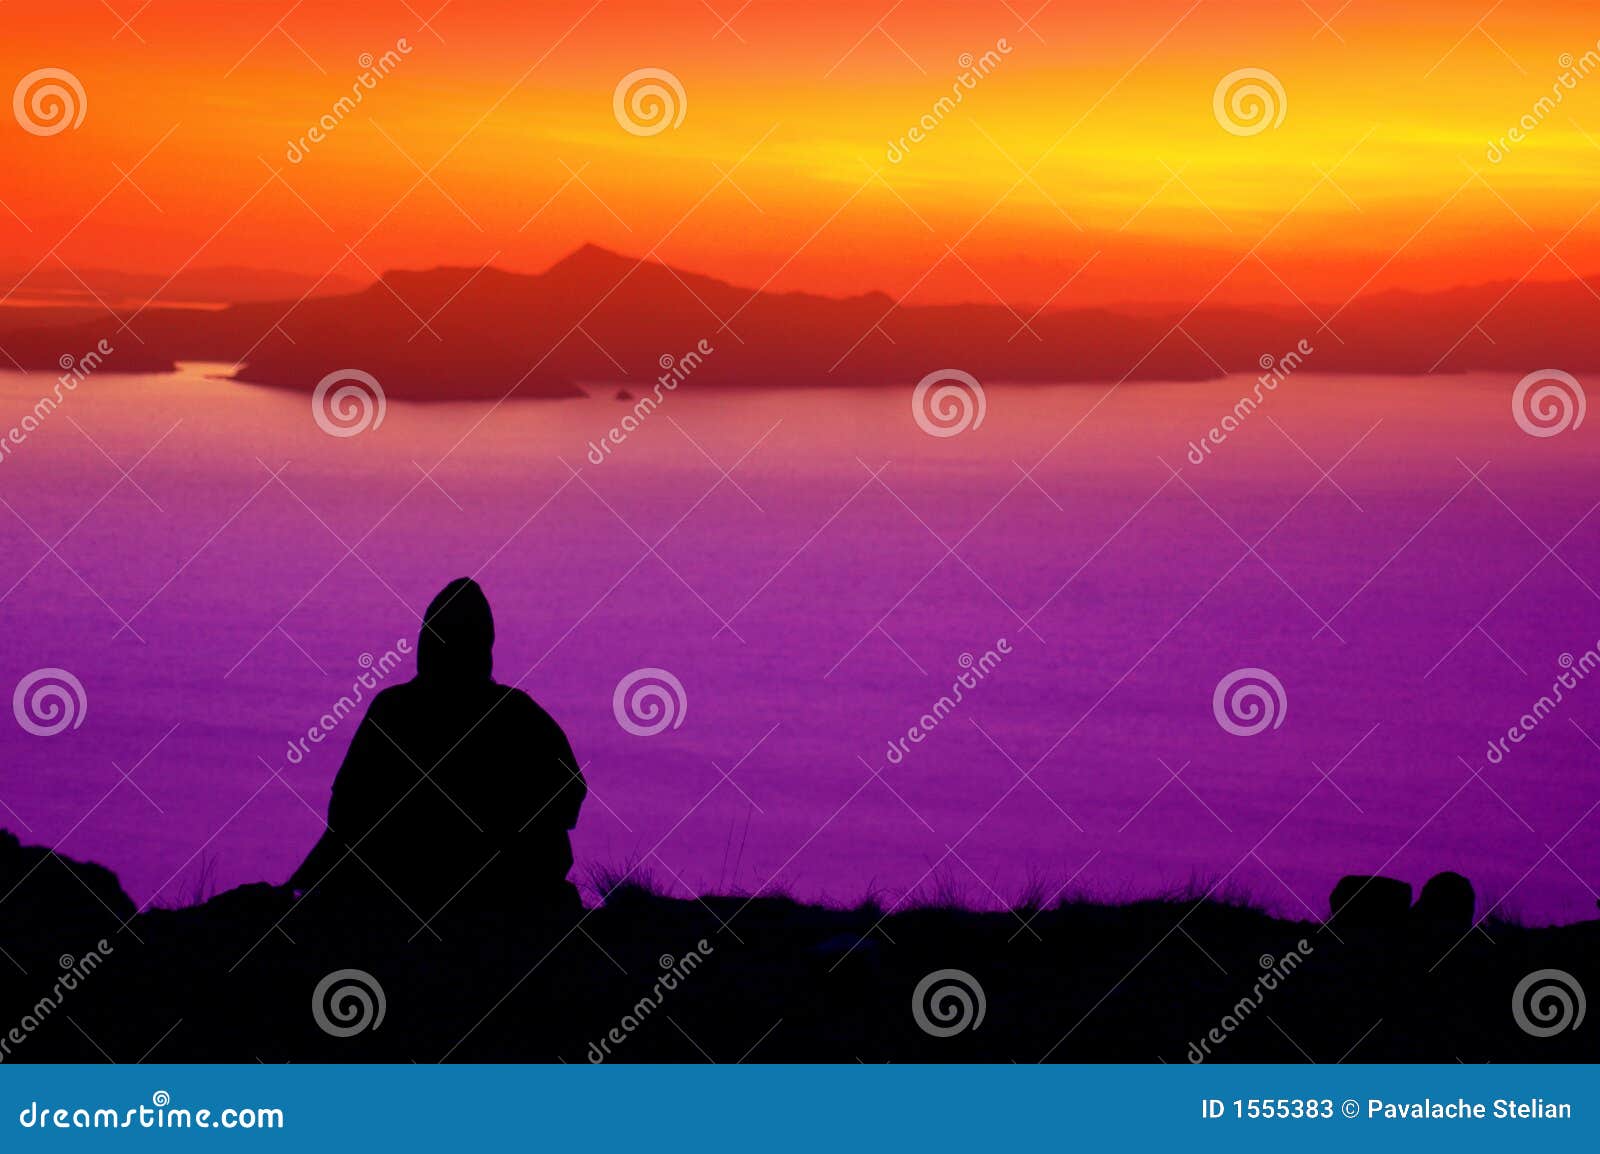 sunset over lake titicaca peru - 5